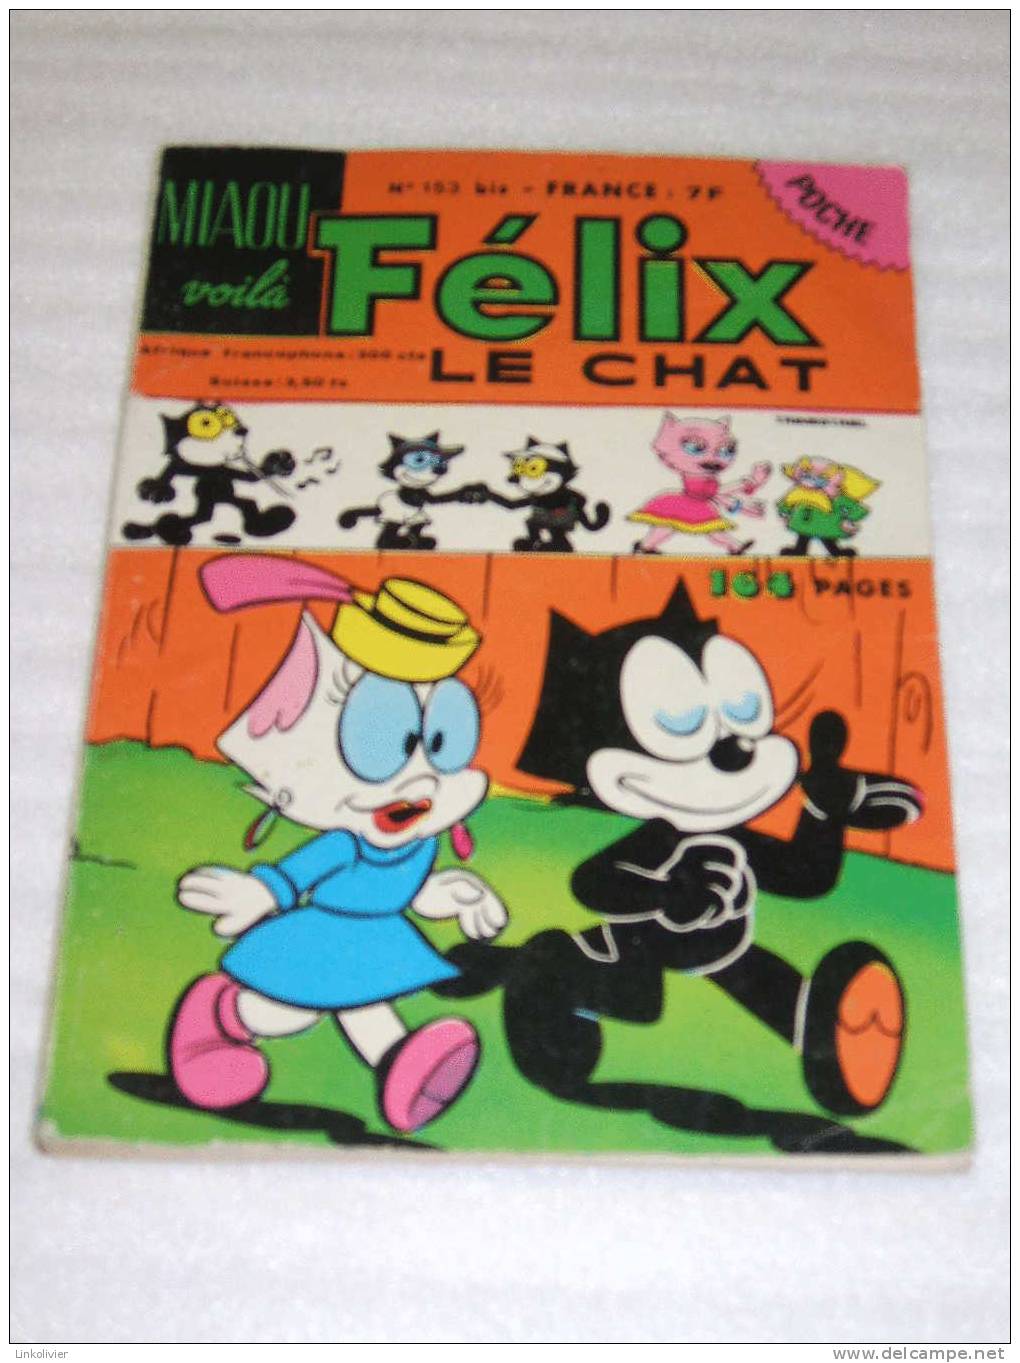 FELIX LE CHAT Miaou Voilà - Poche N° 153 Bis -Sarl Dynamisme Presse Edition 1982 - Félix Le Chat